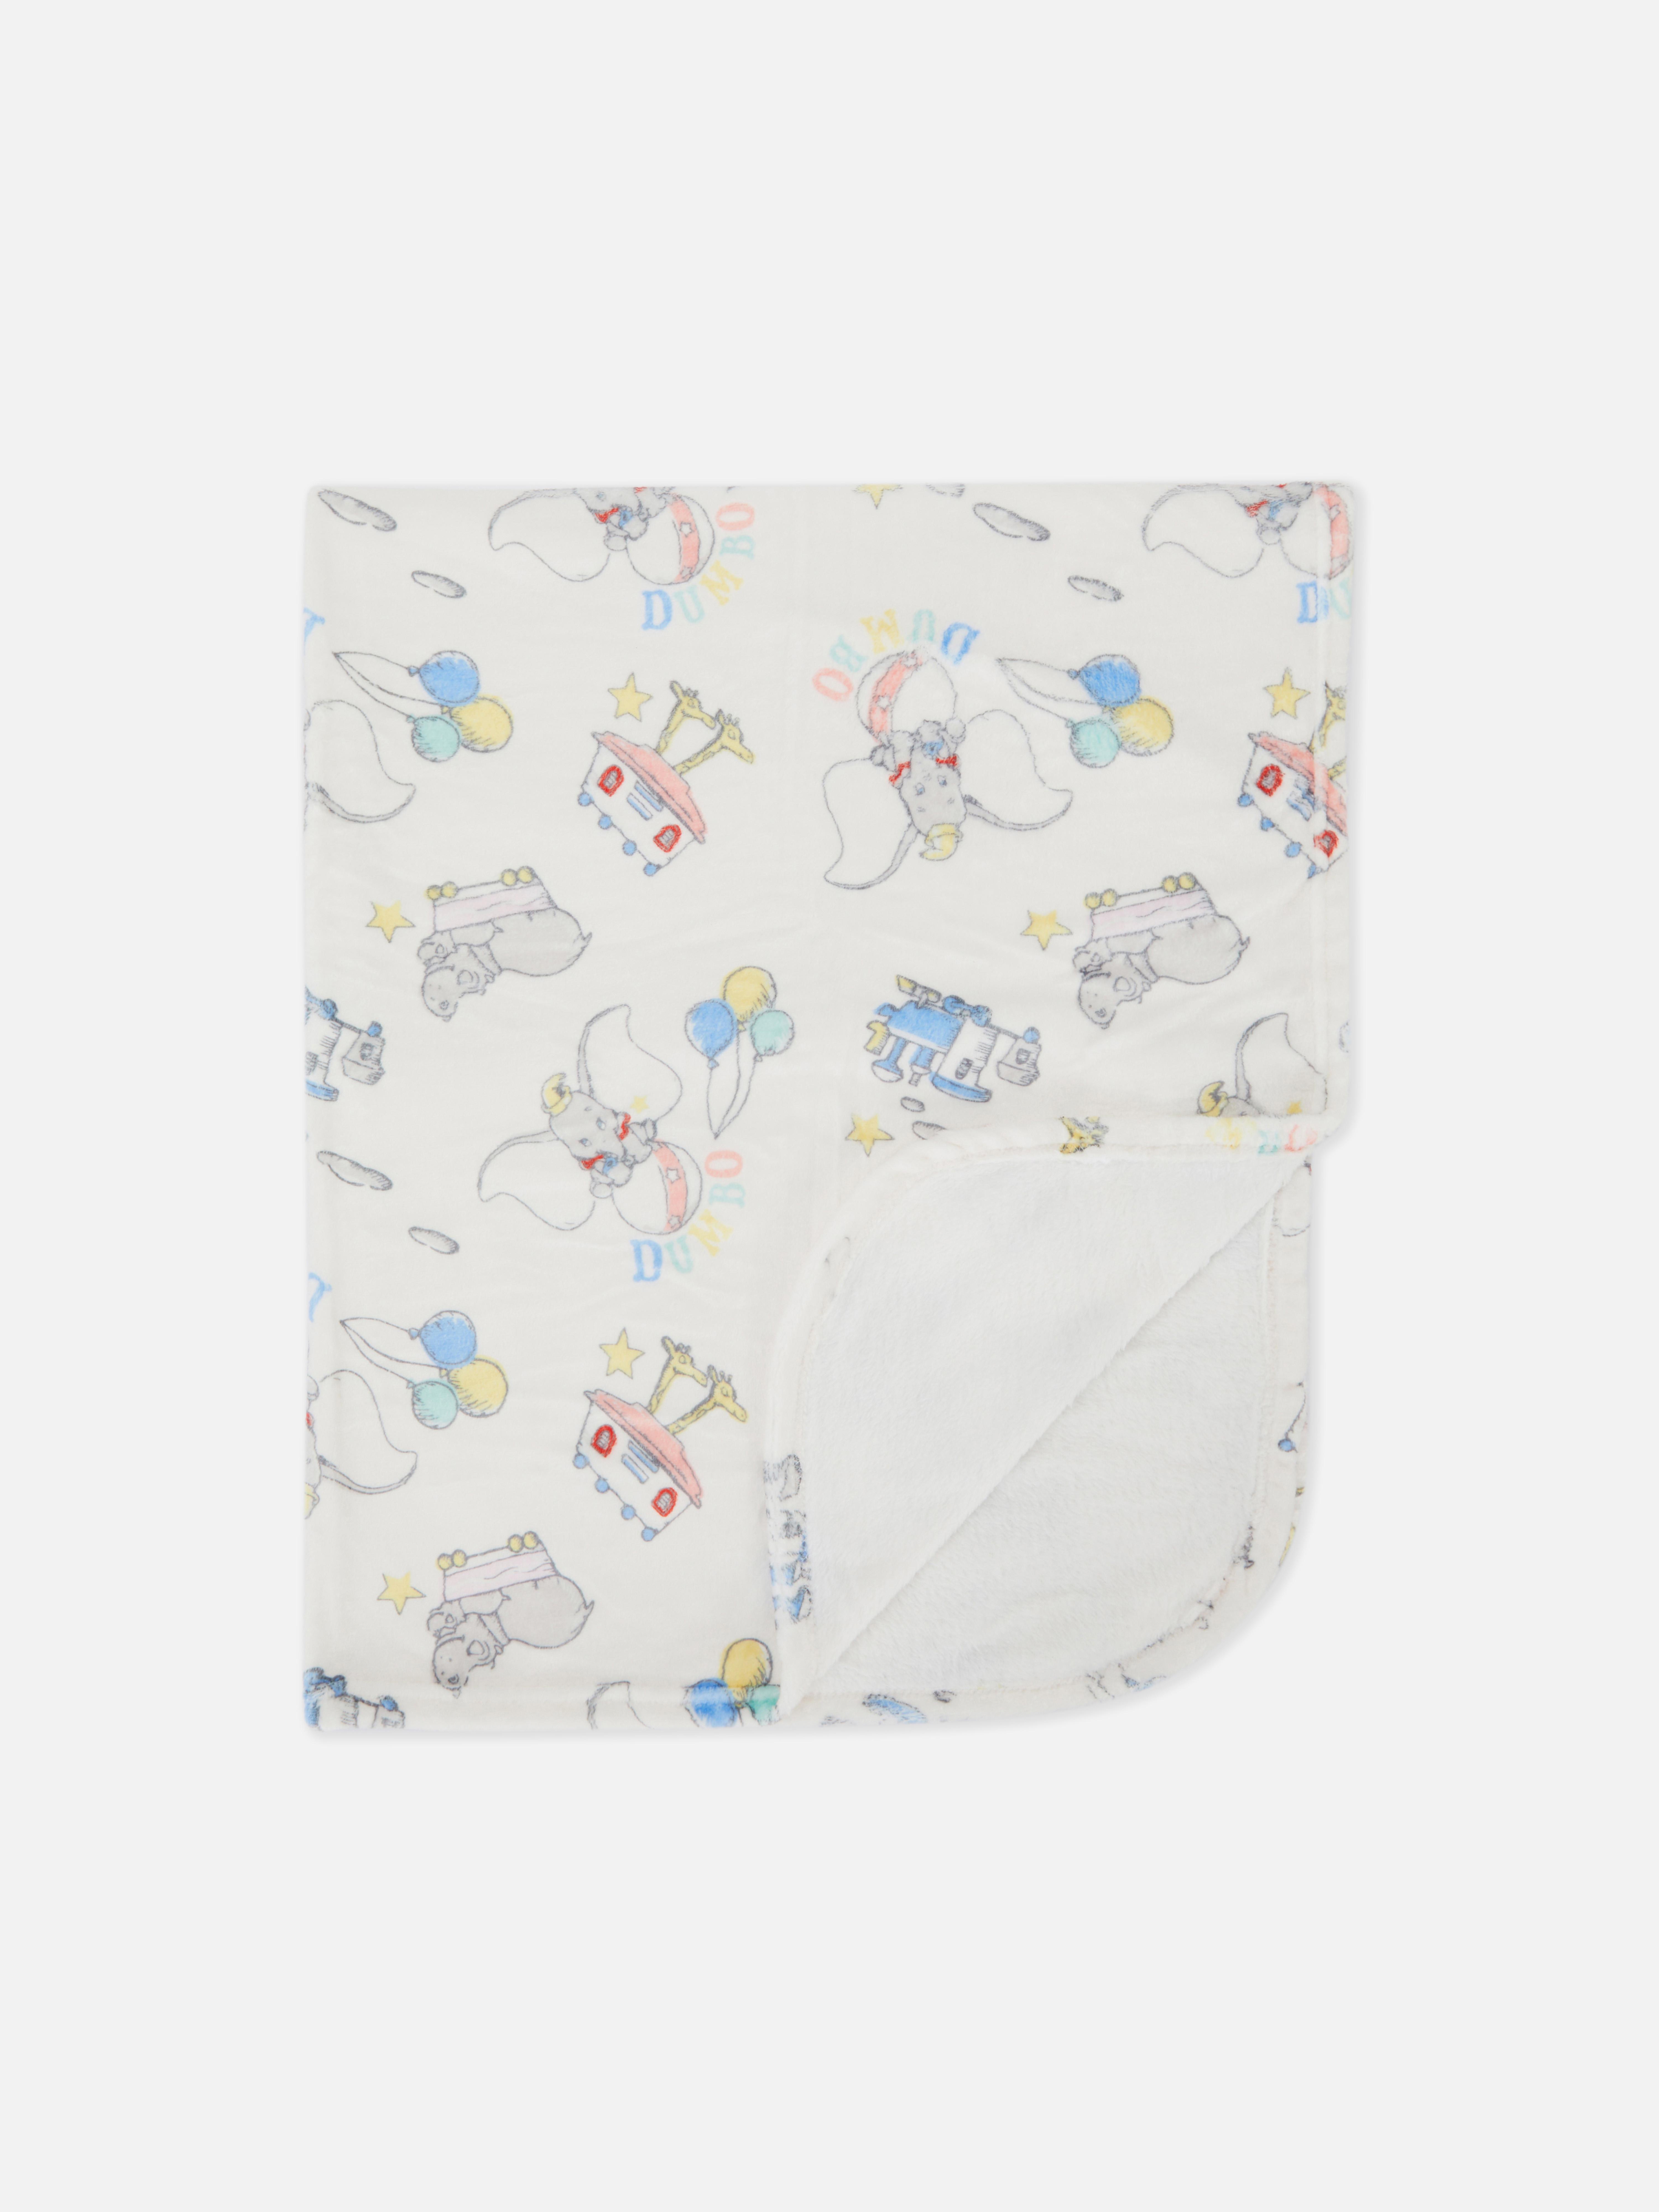 Disney’s Dumbo Blanket